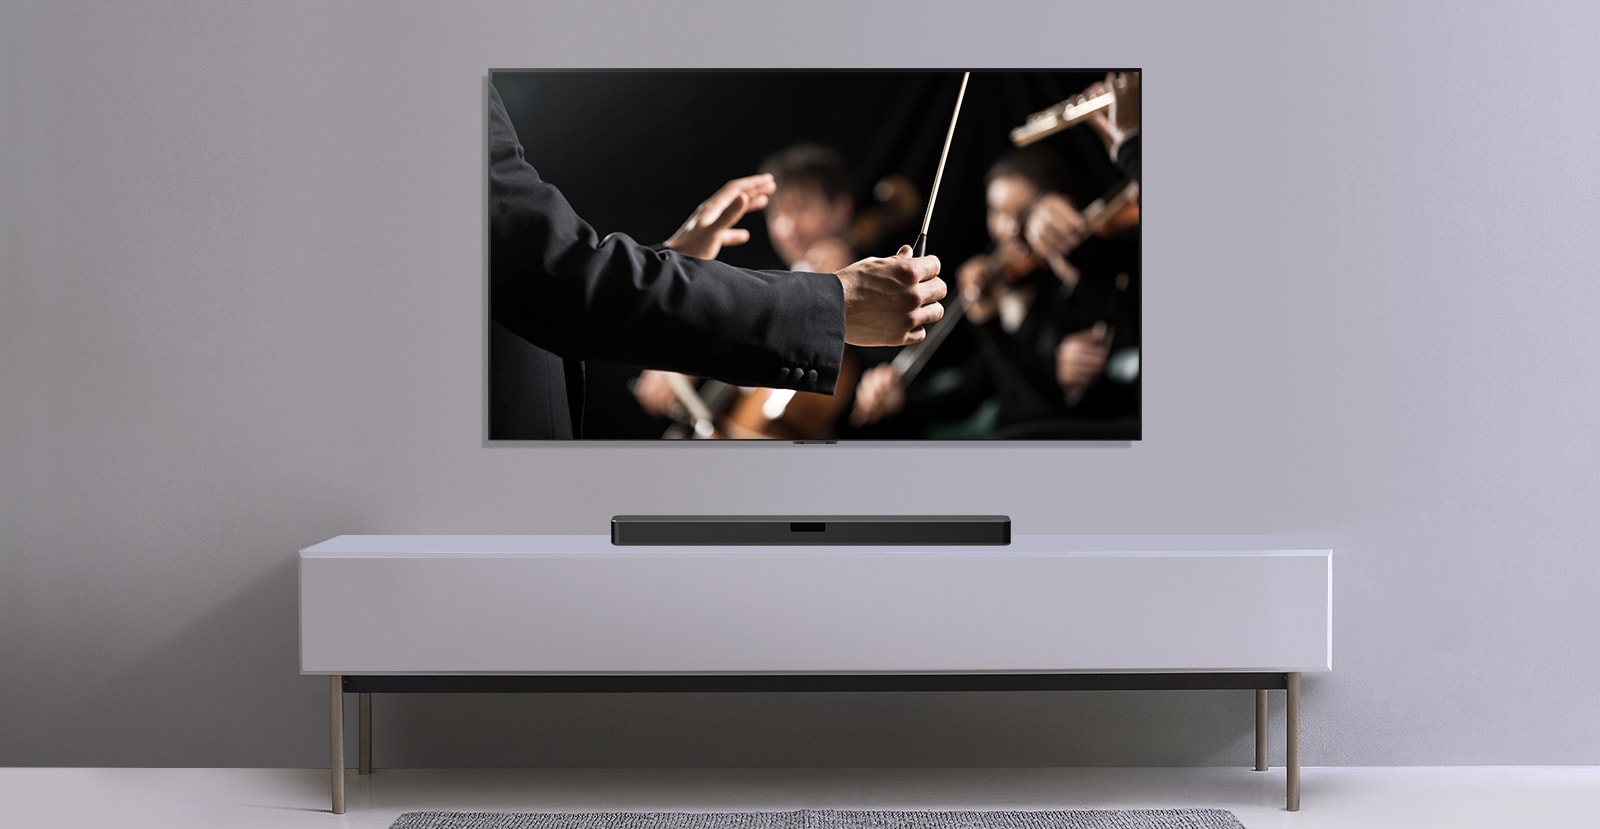 A szürke falon egy TV látható, alatta pedig egy szürke polcon az LG hangprojektor. A TV-n a karmester egy zenekart vezényel.